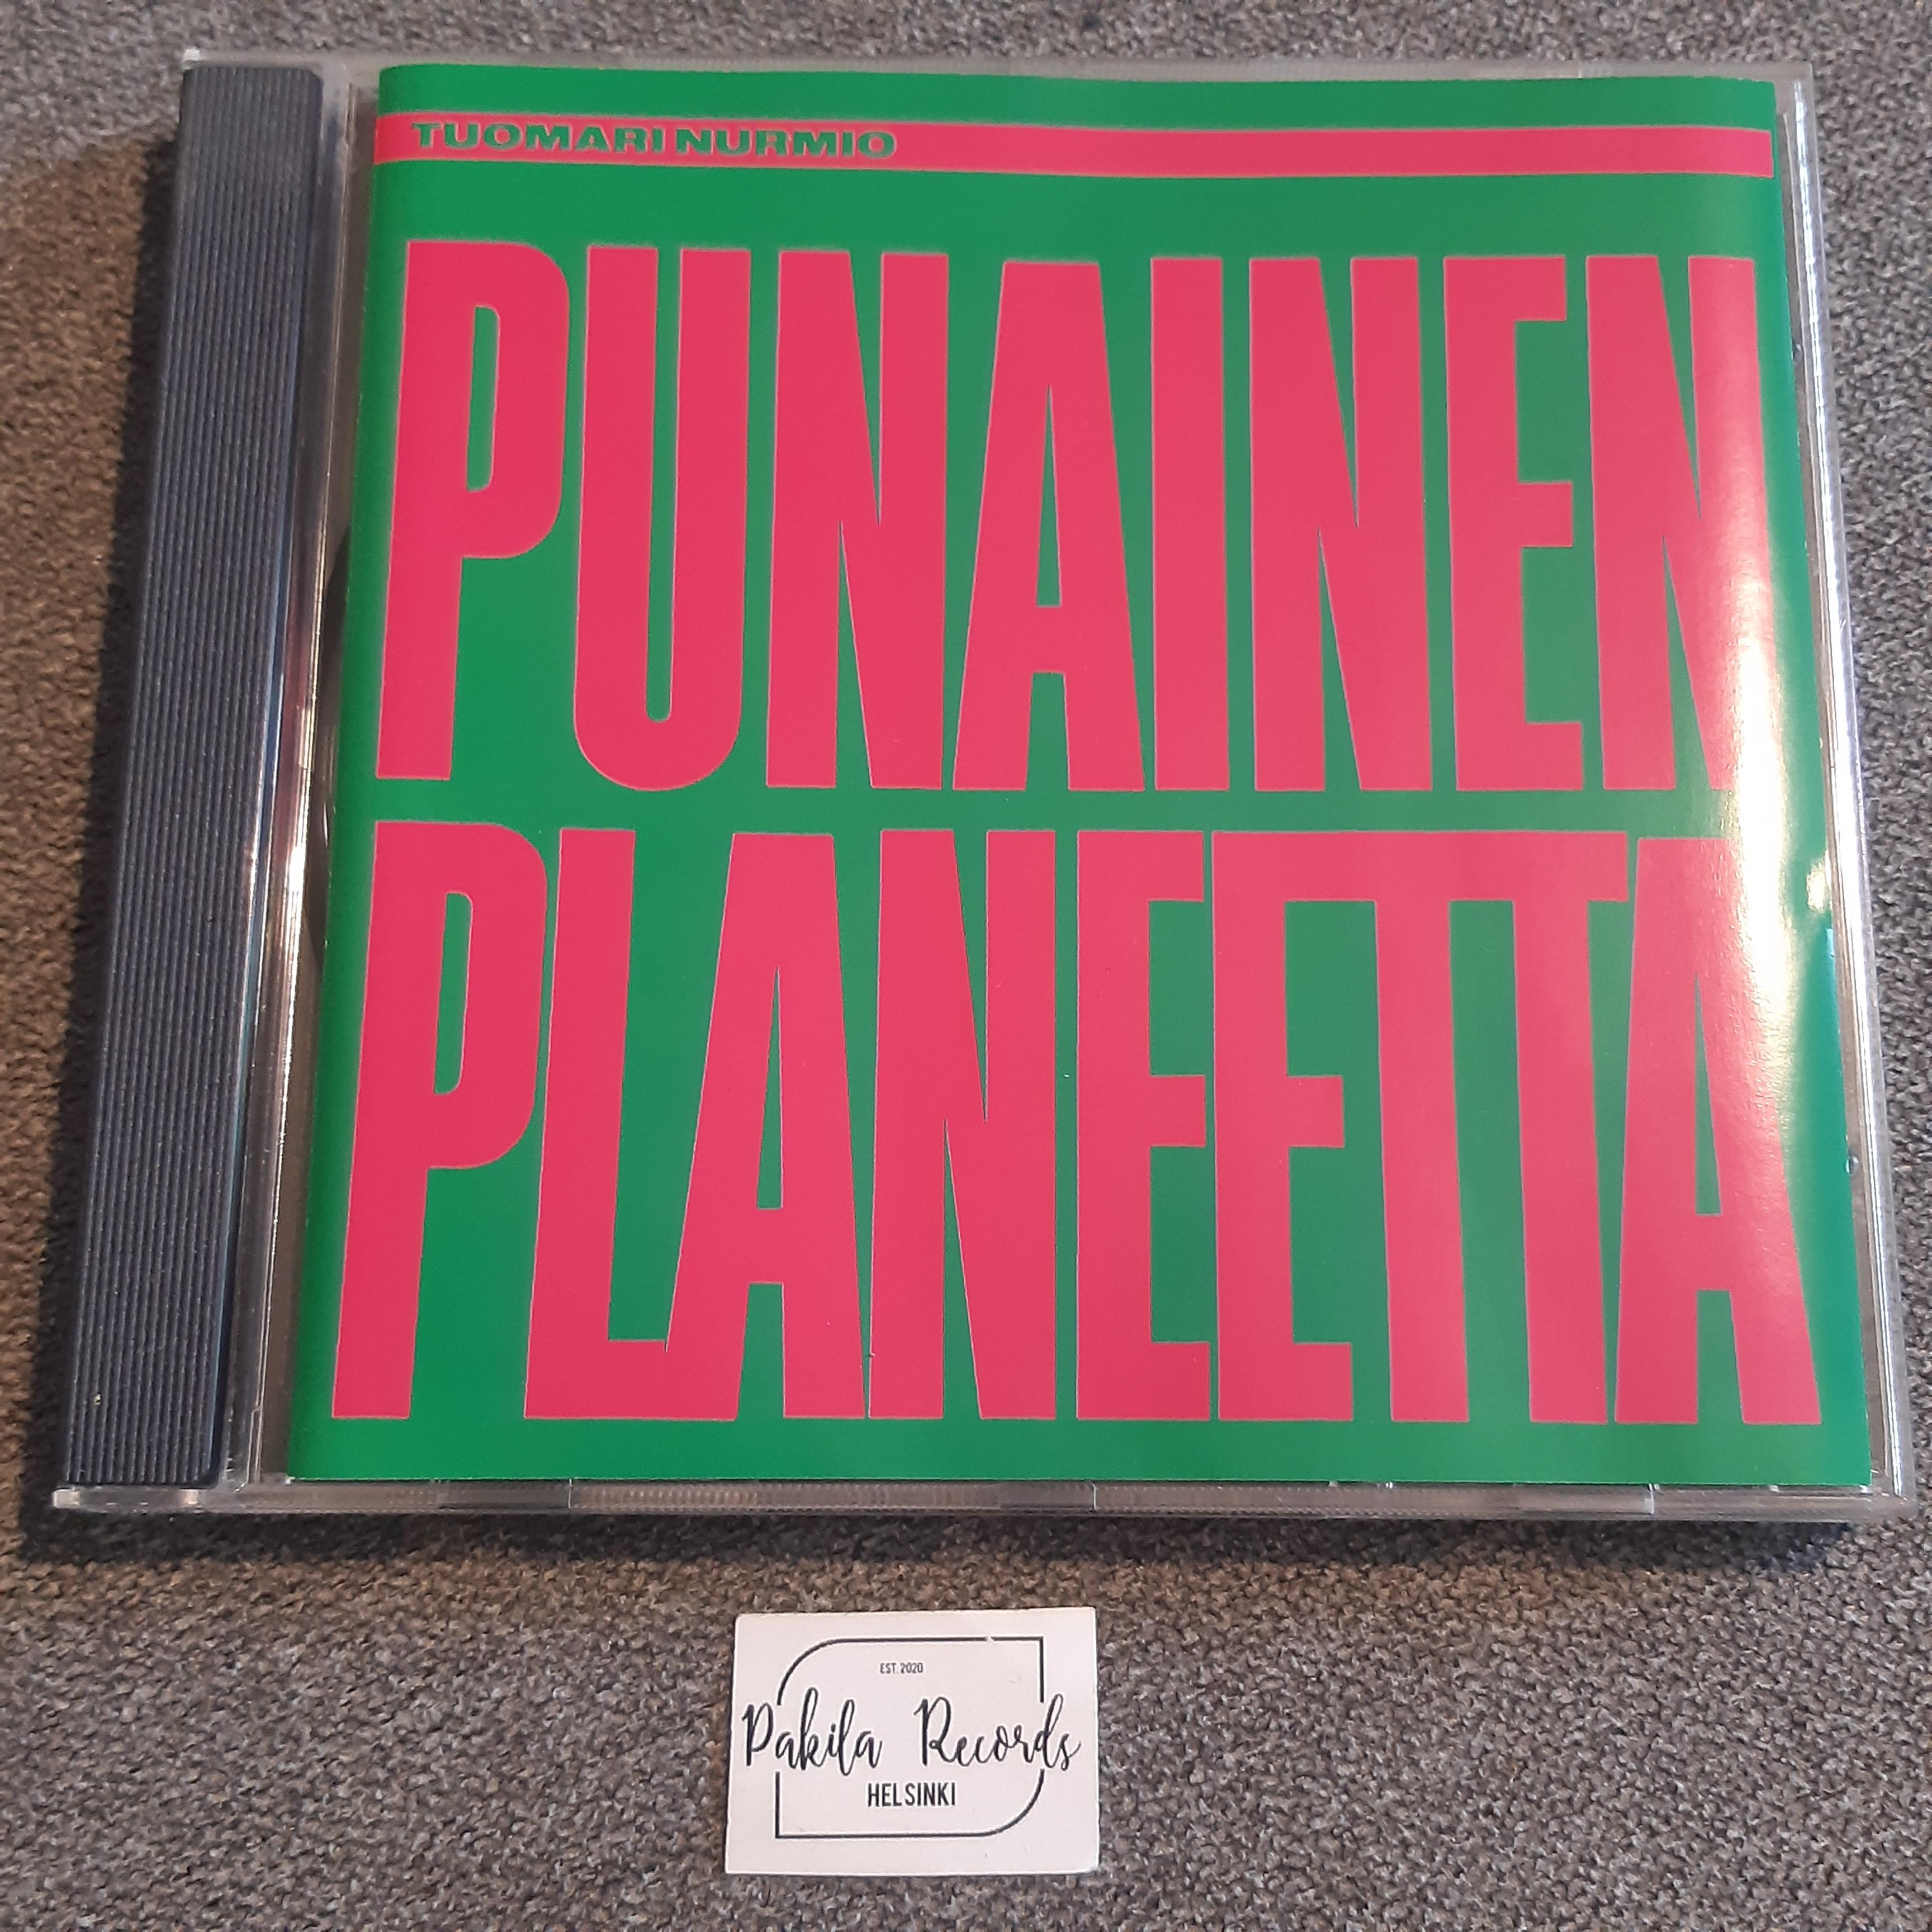 Tuomari Nurmio - Punainen planeetta - CD (käytetty)